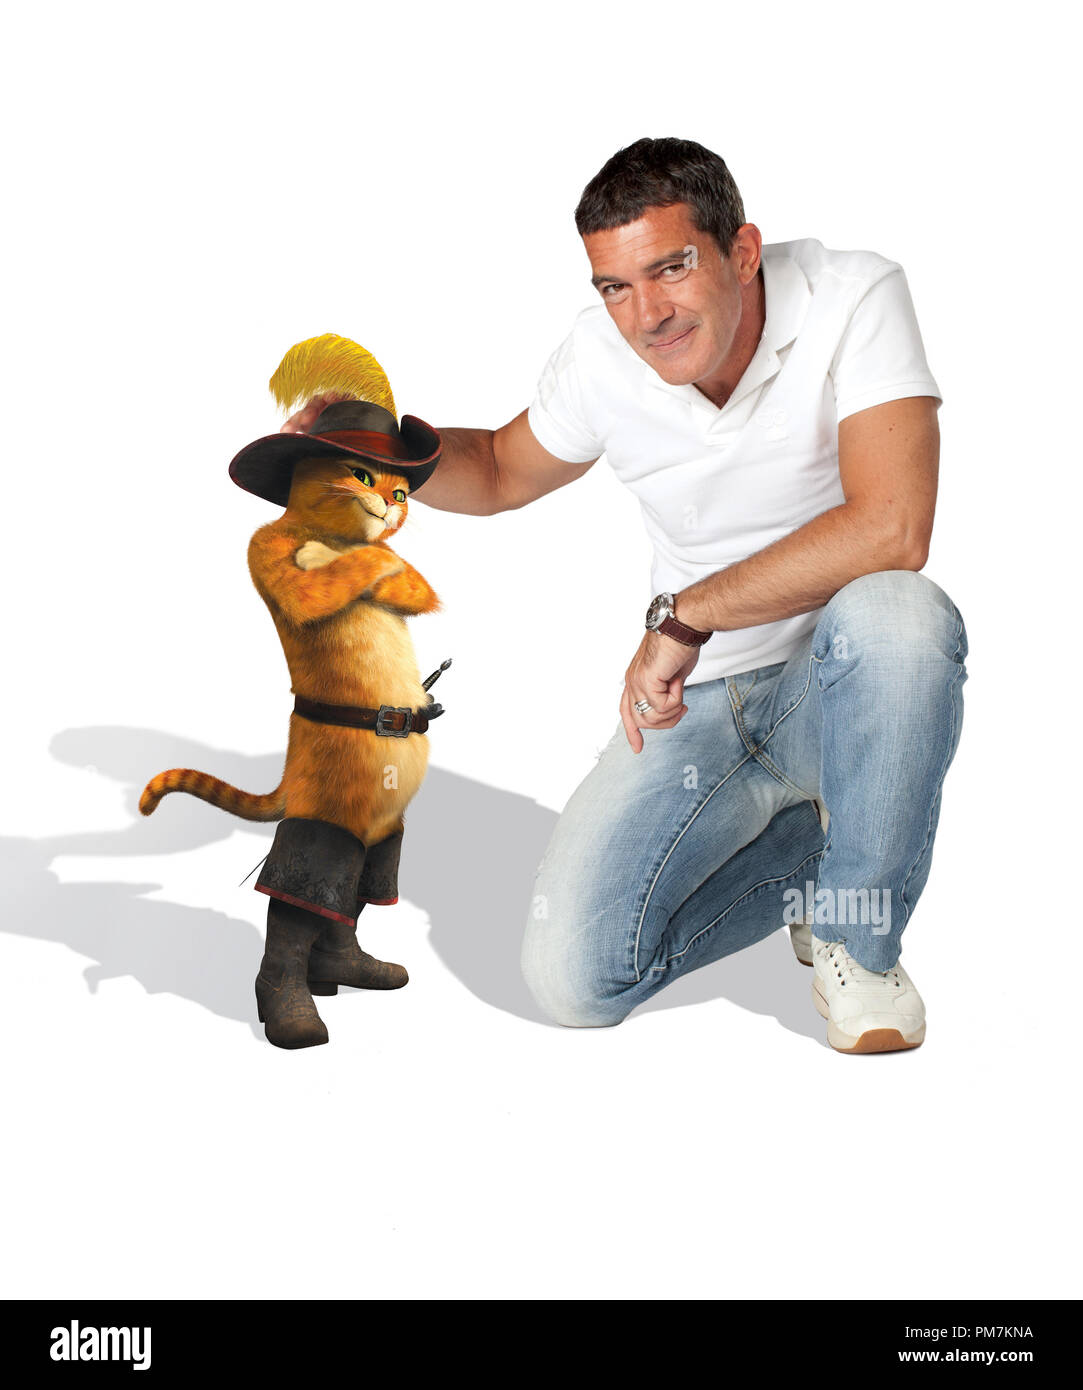 Las voces de Antonio Banderas, El Gato con Botas en DreamWorks Animation EL GATO CON BOTAS, que será estrenada por Paramount Pictures Foto de stock